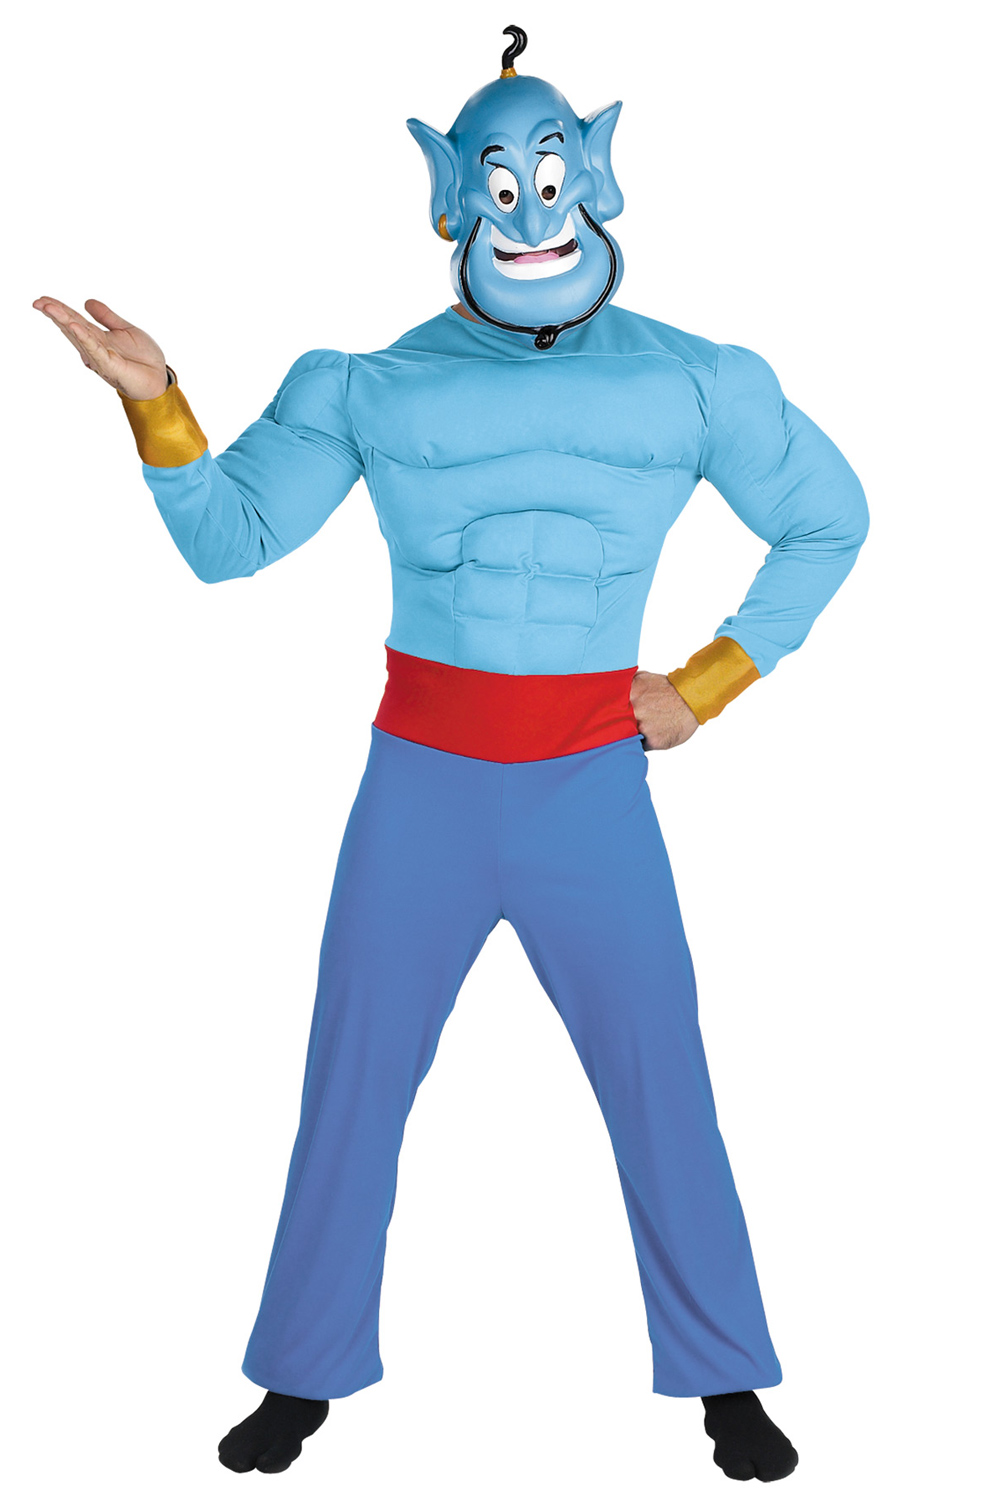 Fantasia de Disney Aladdin Gênio - Disney Aladdin Genie Muscle Adult Costume